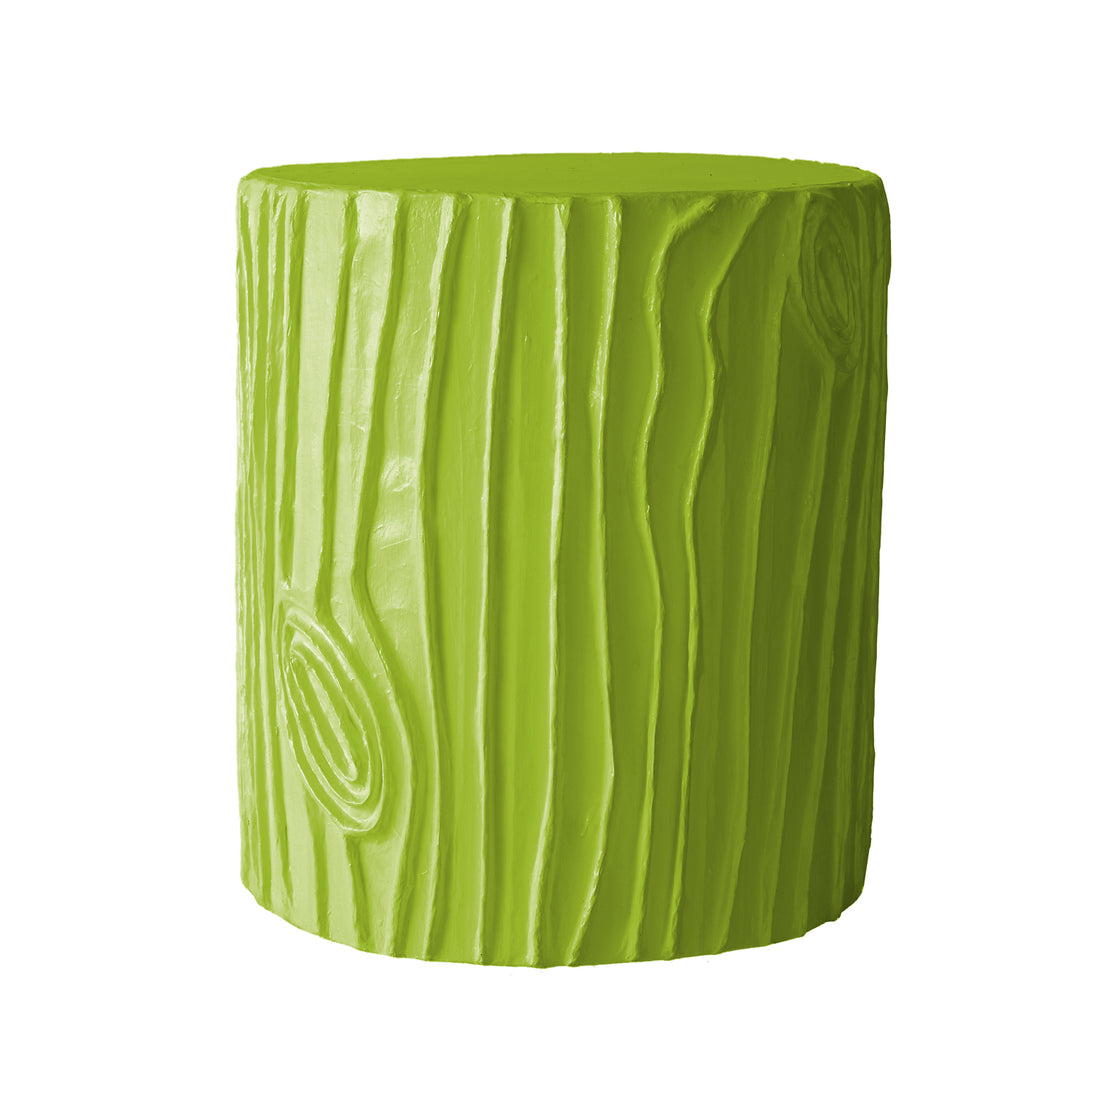 happy spring green papier mache stool in faux bois pattern